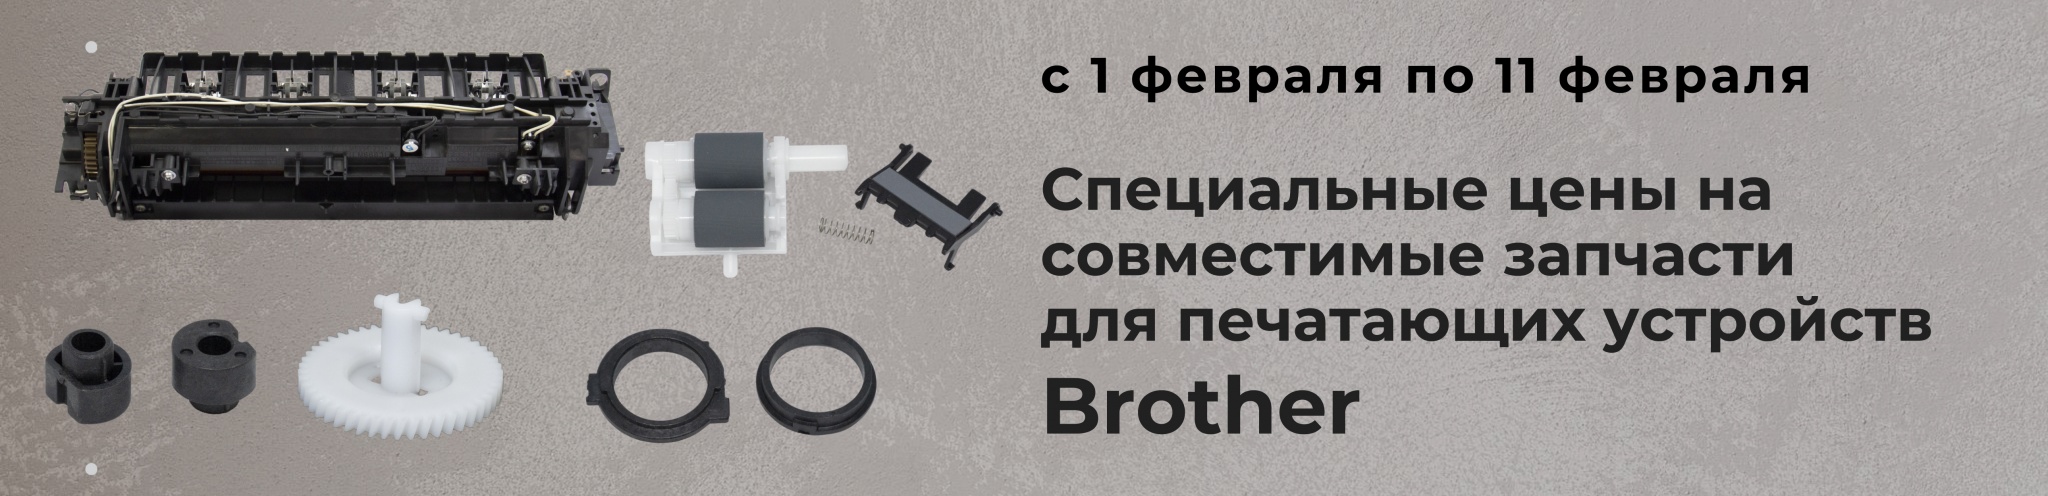 zip-brother-b2b-.jpg